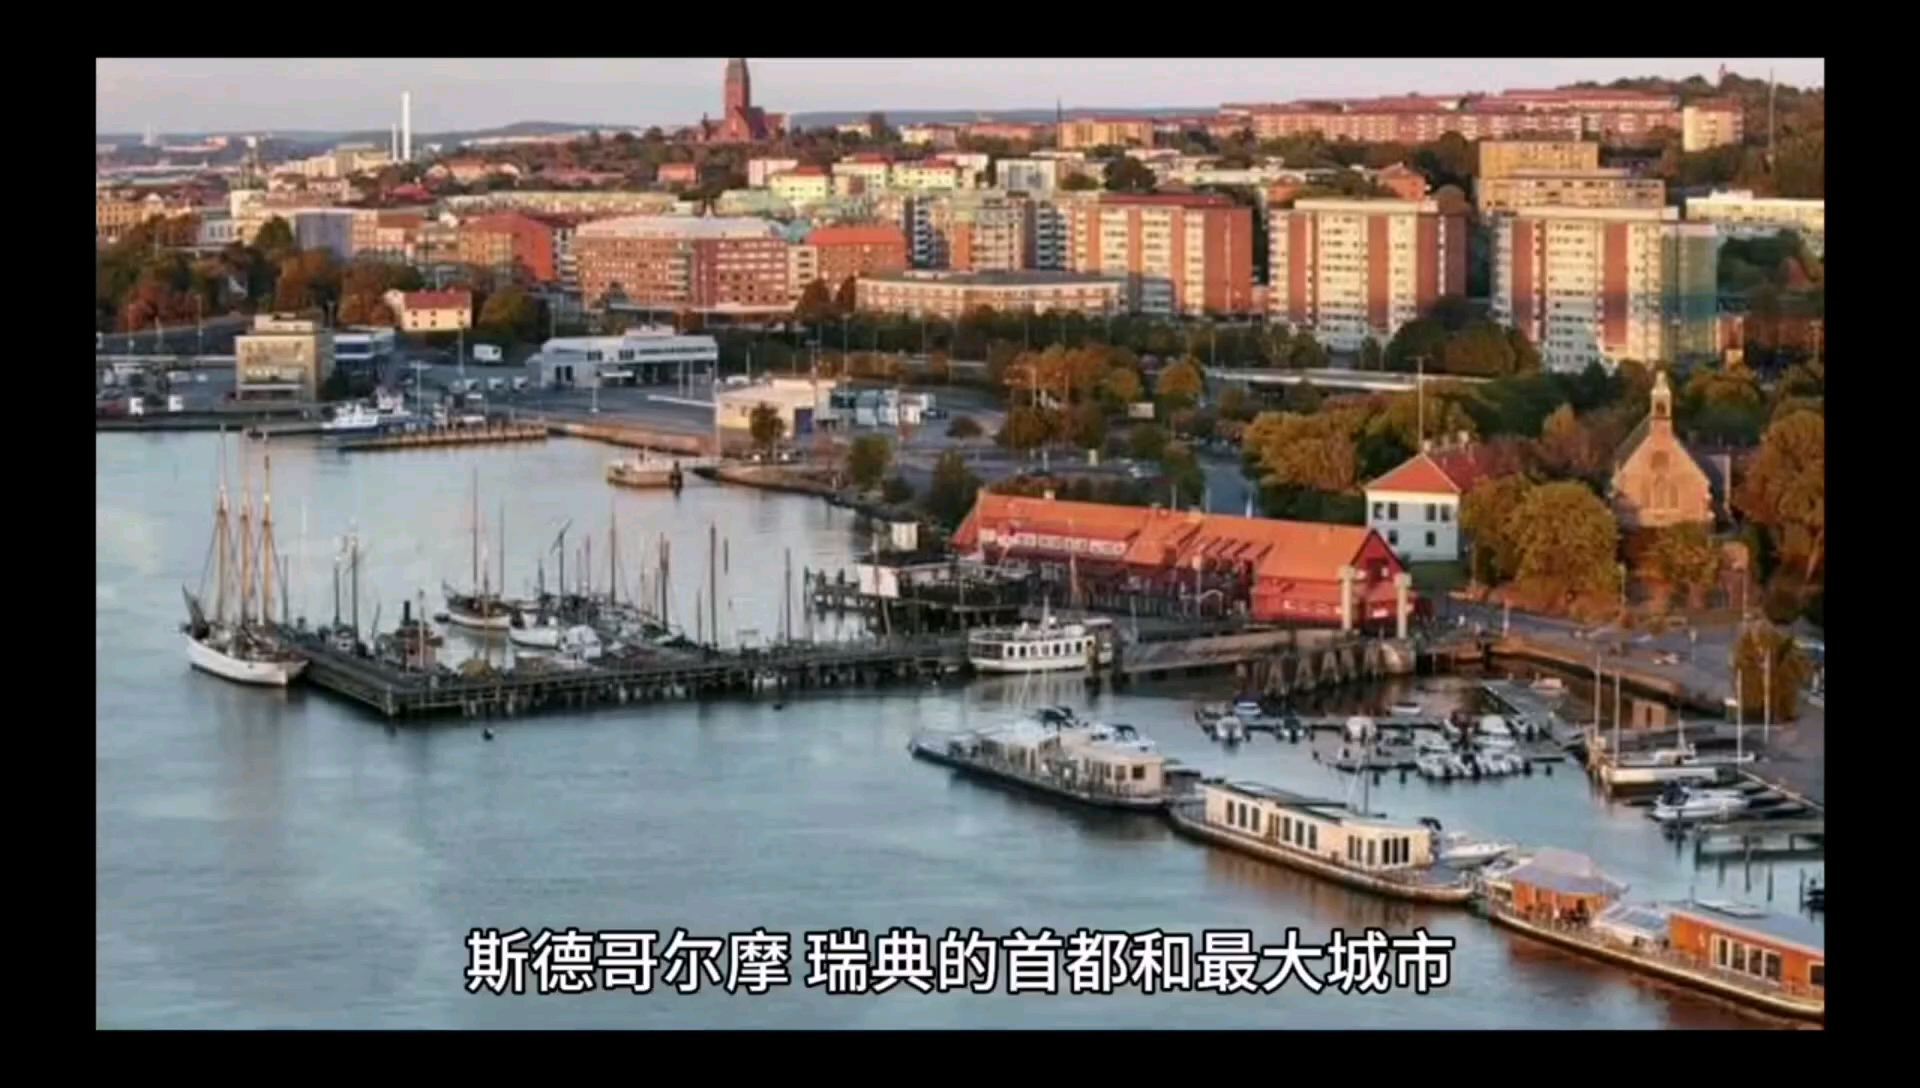 看看世界有多大，斯德哥尔摩#看世界 #人文 #环球旅行 #海外旅行 #游欧洲 #天主教堂 #在家看世